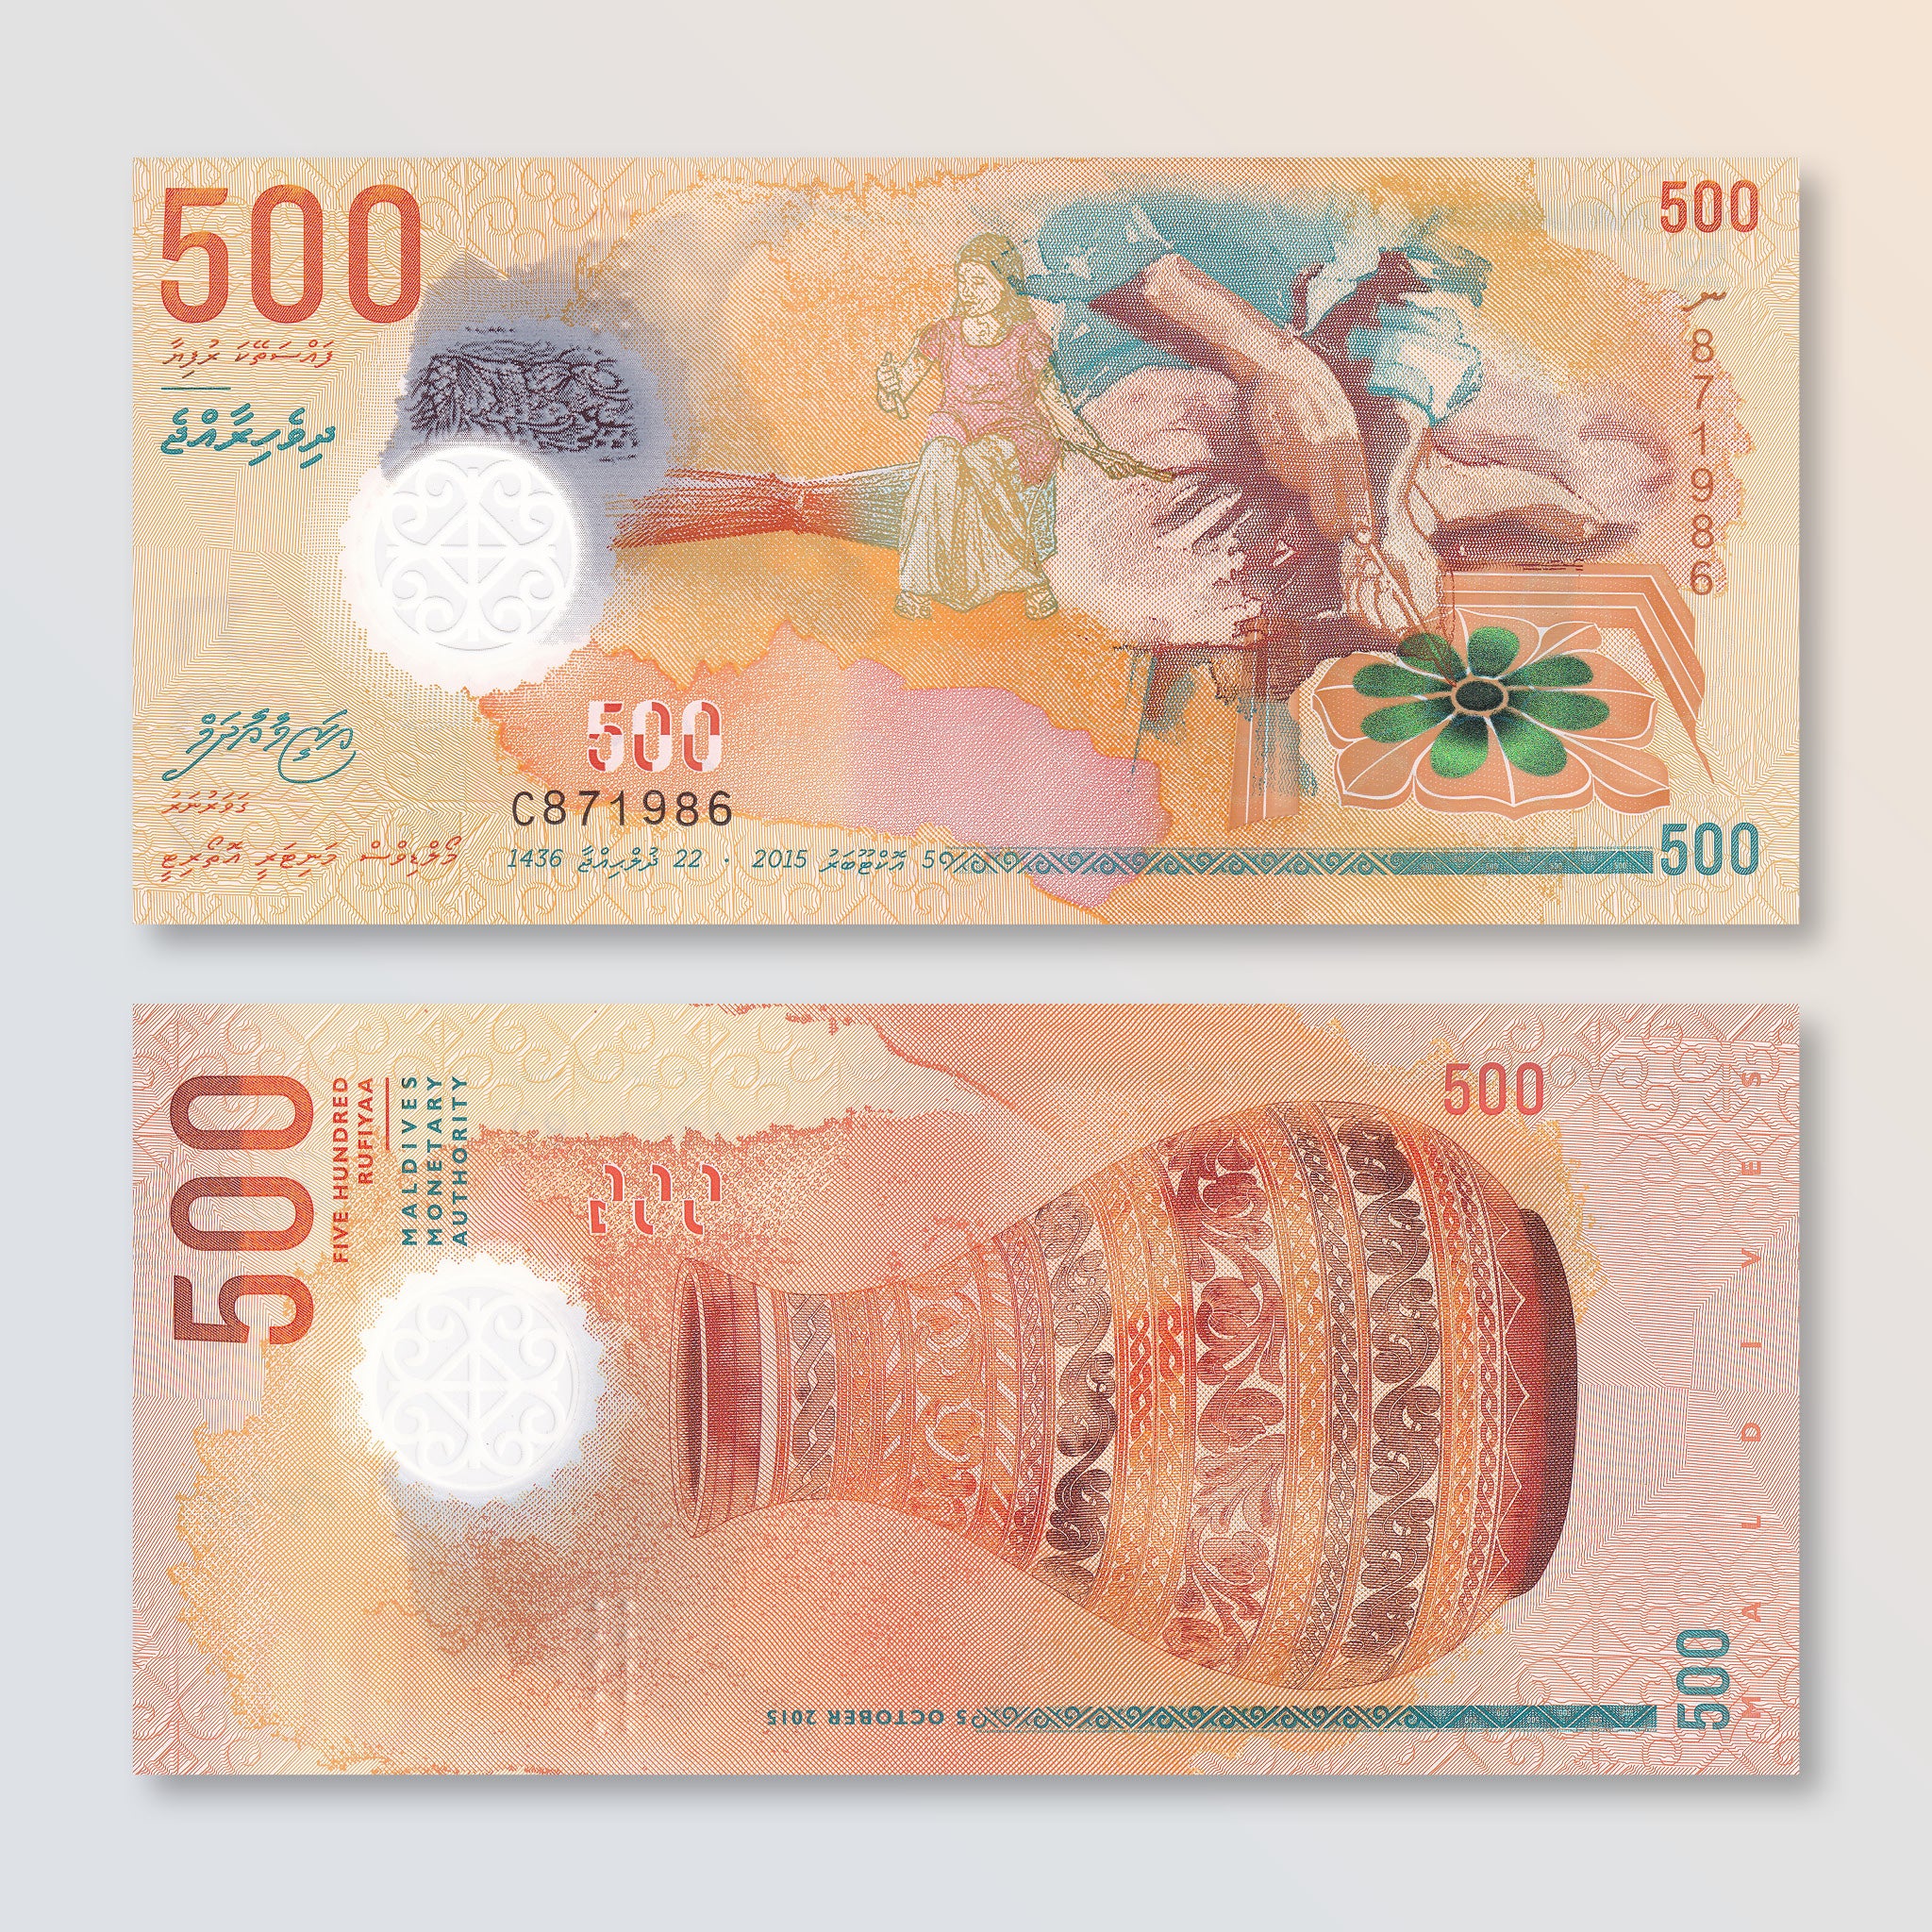 Maldives 500 Rufiyaa, 2015, B220a, P30, UNC - Robert's World Money - World Banknotes